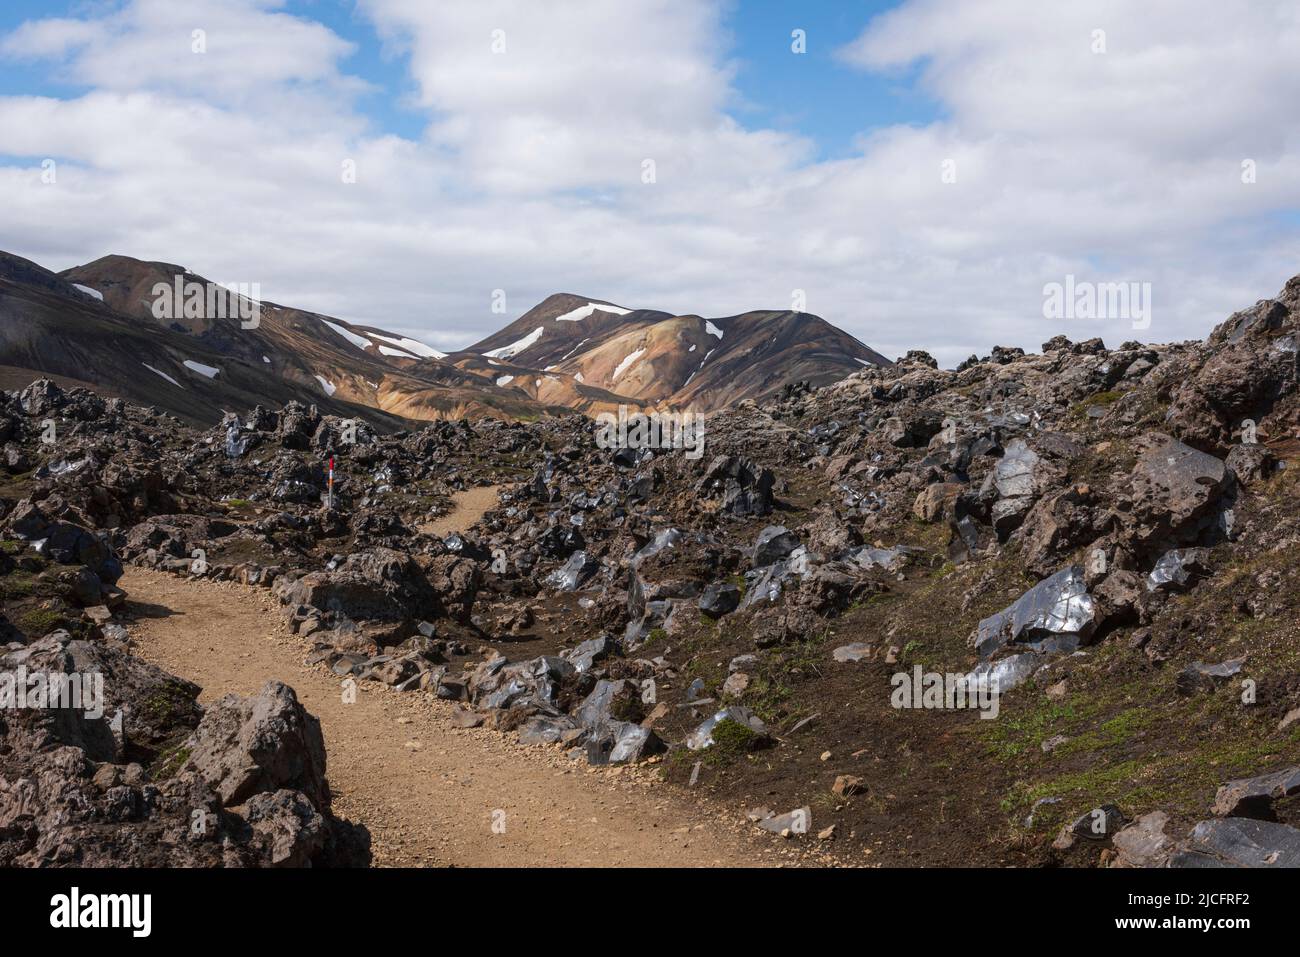 Le sentier de randonnée de Laugavegur est le plus célèbre trekking de plusieurs jours en Islande. Paysage tiré de la région autour de Landmannalaugar, point de départ du sentier de randonnée longue distance dans les hautes terres de l'Islande. Chemin à travers un champ de lave. Banque D'Images